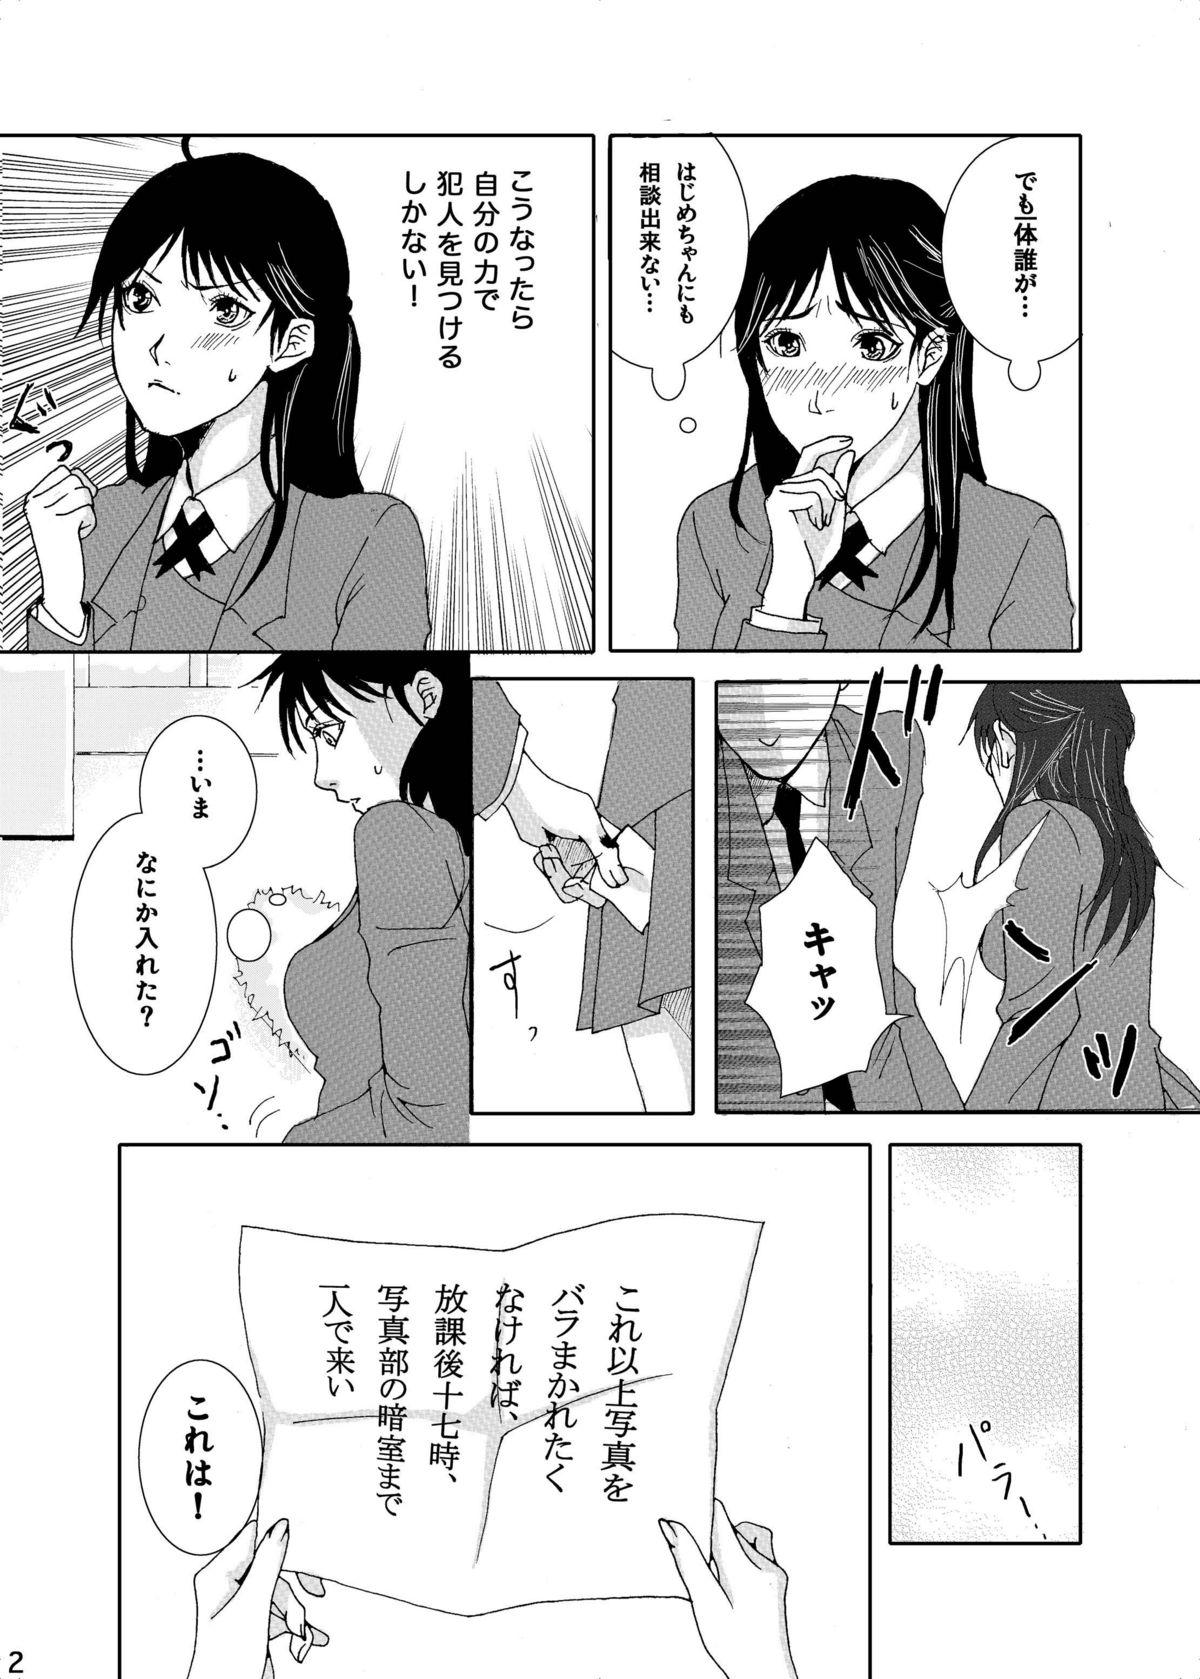 Facials Nanase Shoujo no Jikenbo Case - Kindaichi shounen no jikenbo Mofos - Page 4